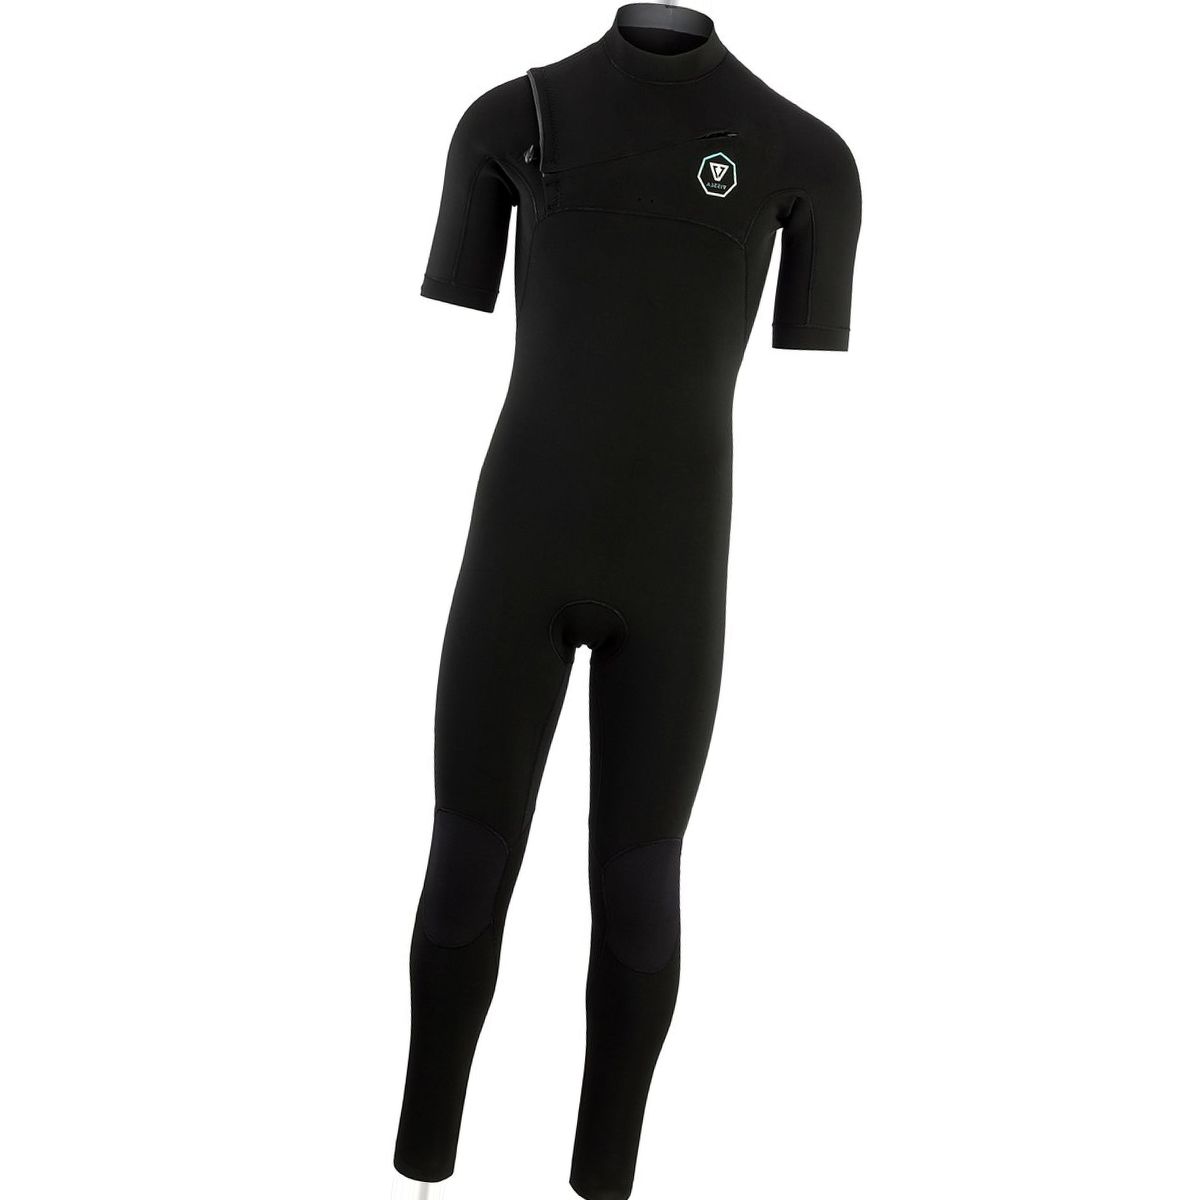 Vissla The 7 Seas 2/2 Short- Sleeve Full Wetsuit - Men's